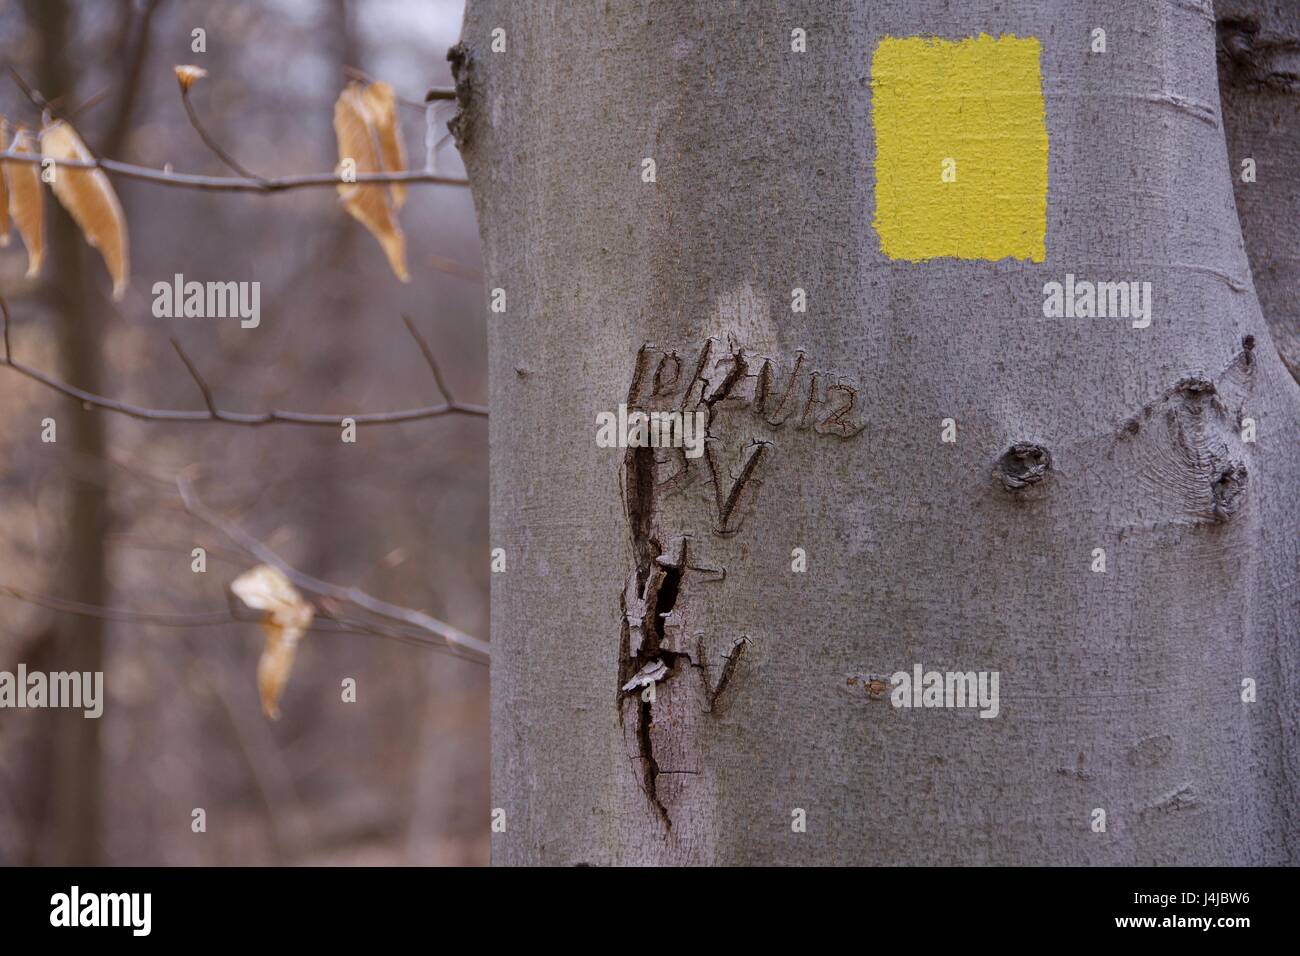 Baum im Wald mit gelben Wegweiser sowie Schreiben erste Carving, die Ursachen der Zerstörung Stockfoto